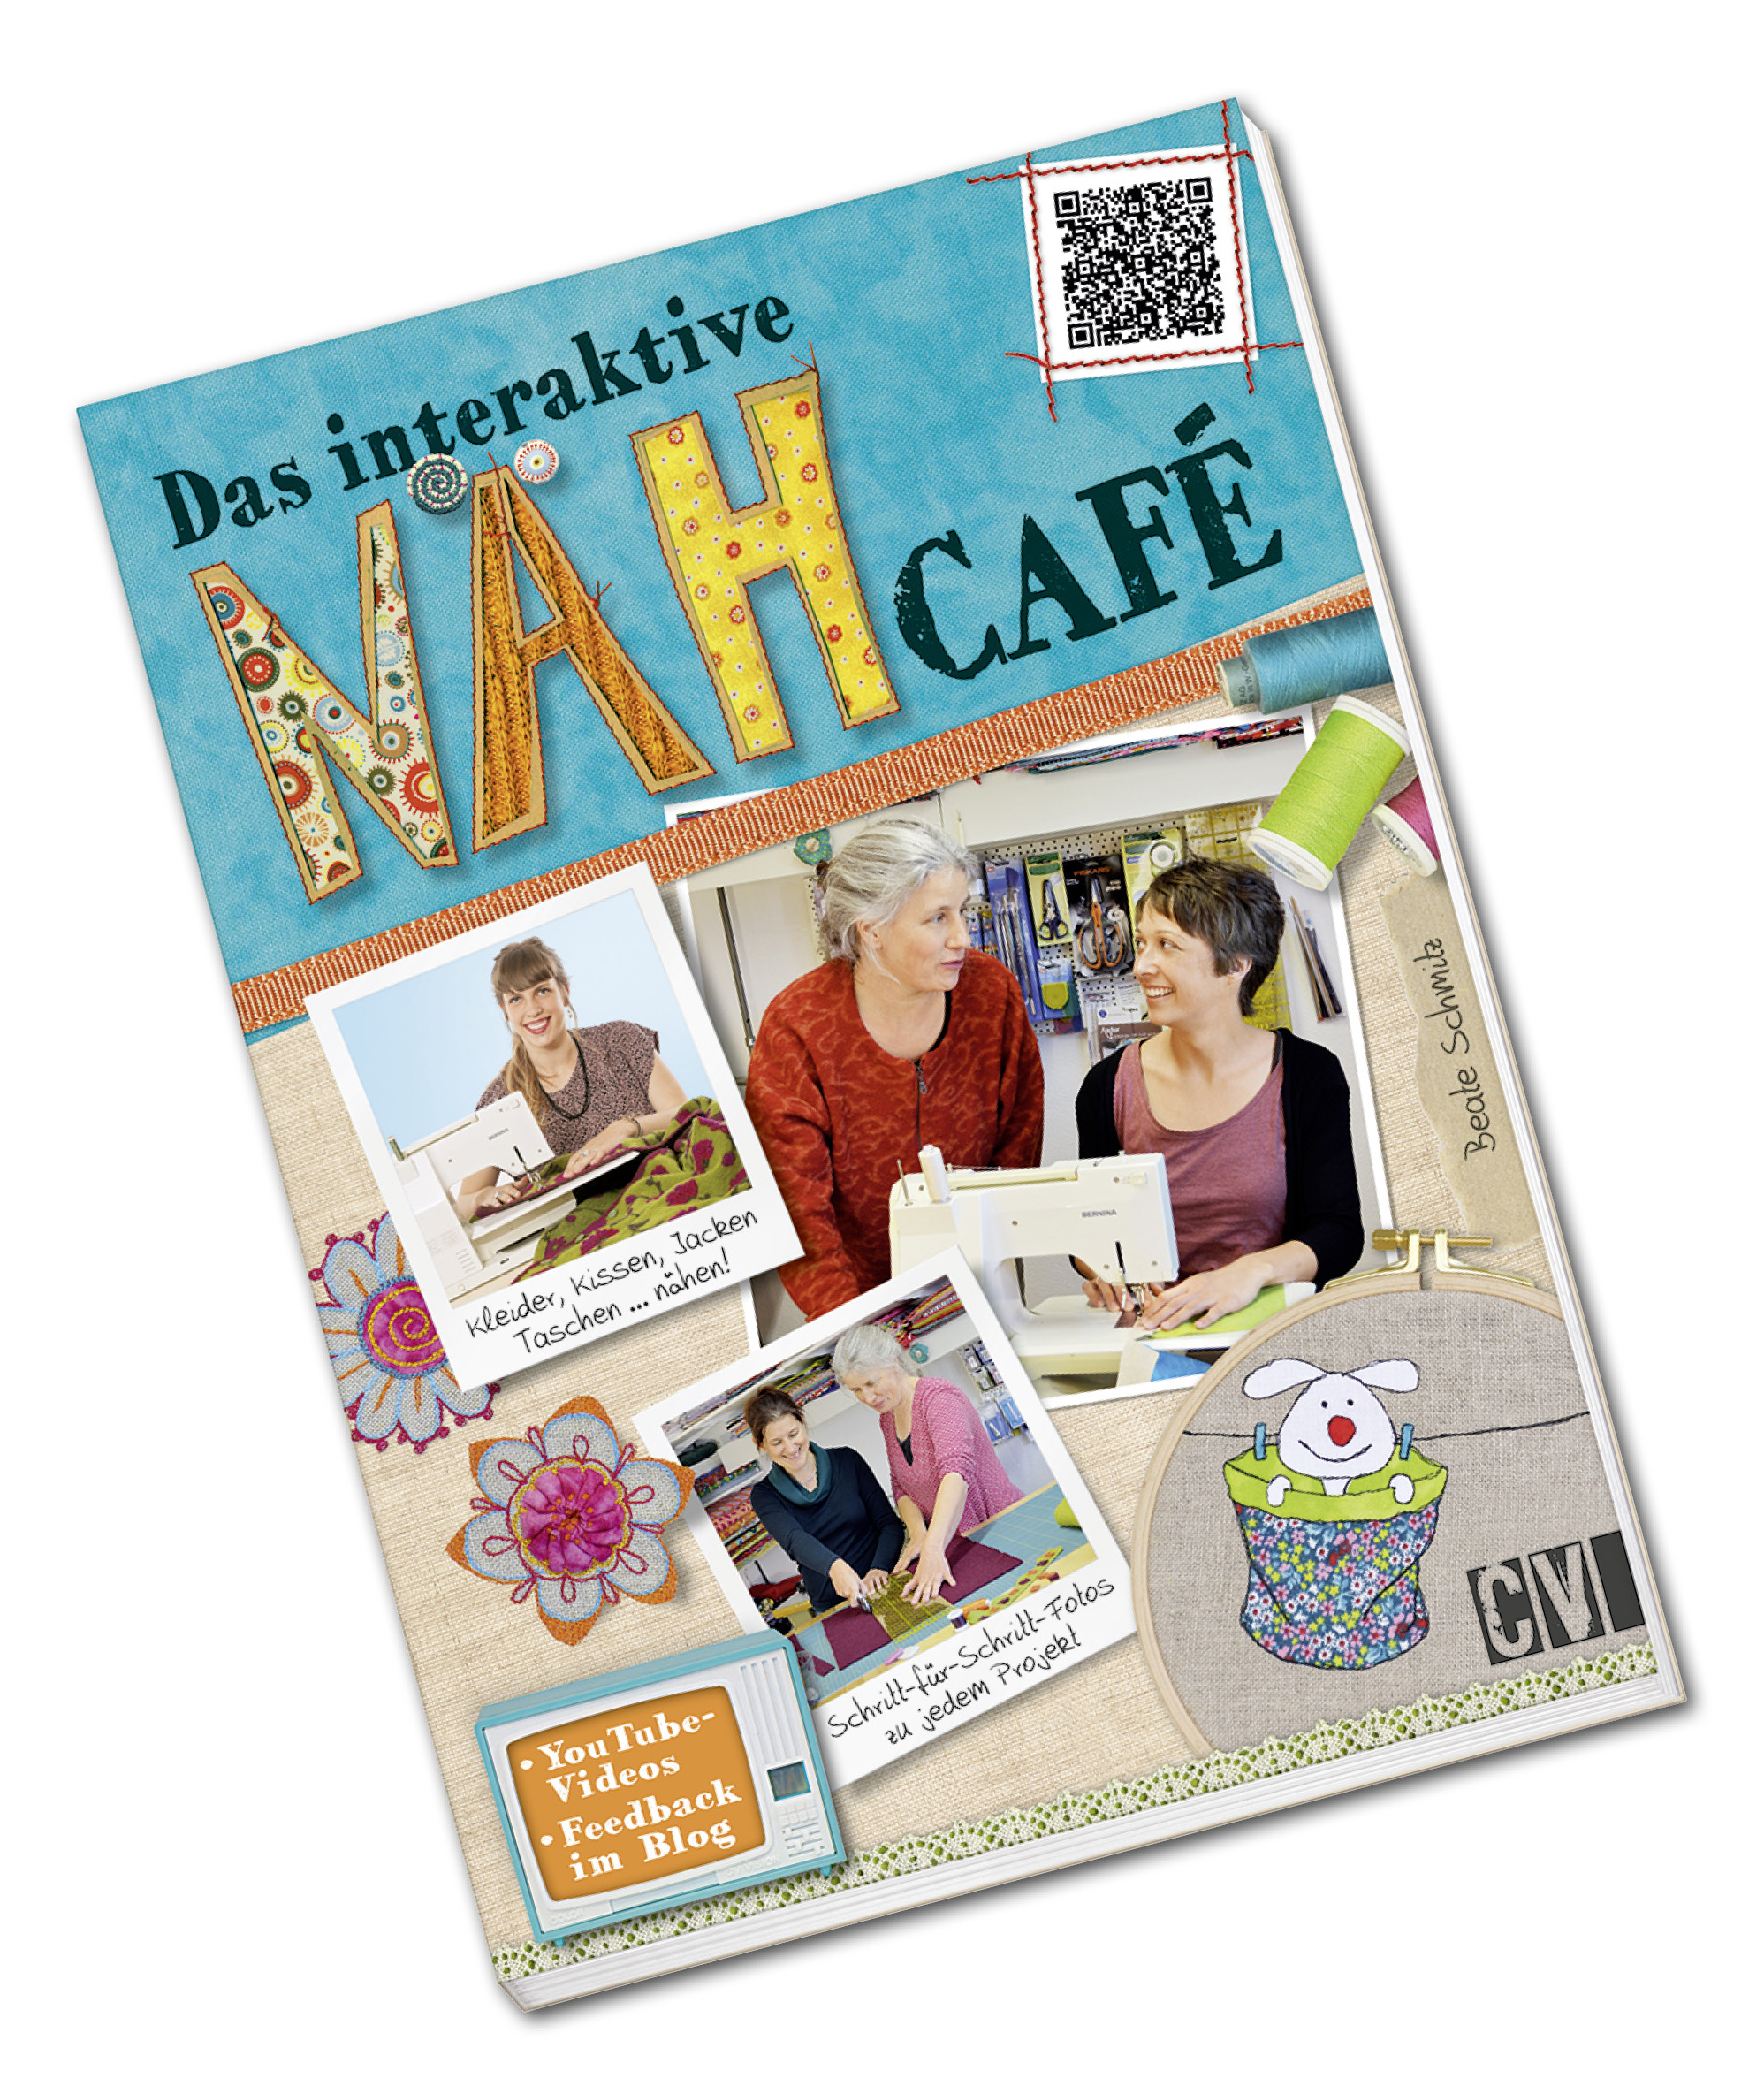 Das interaktive Nähcafé, Nähbuch, Nähanleitungen für Einsteiger und Fortgeschrittene, originalgroße Schnittmuster